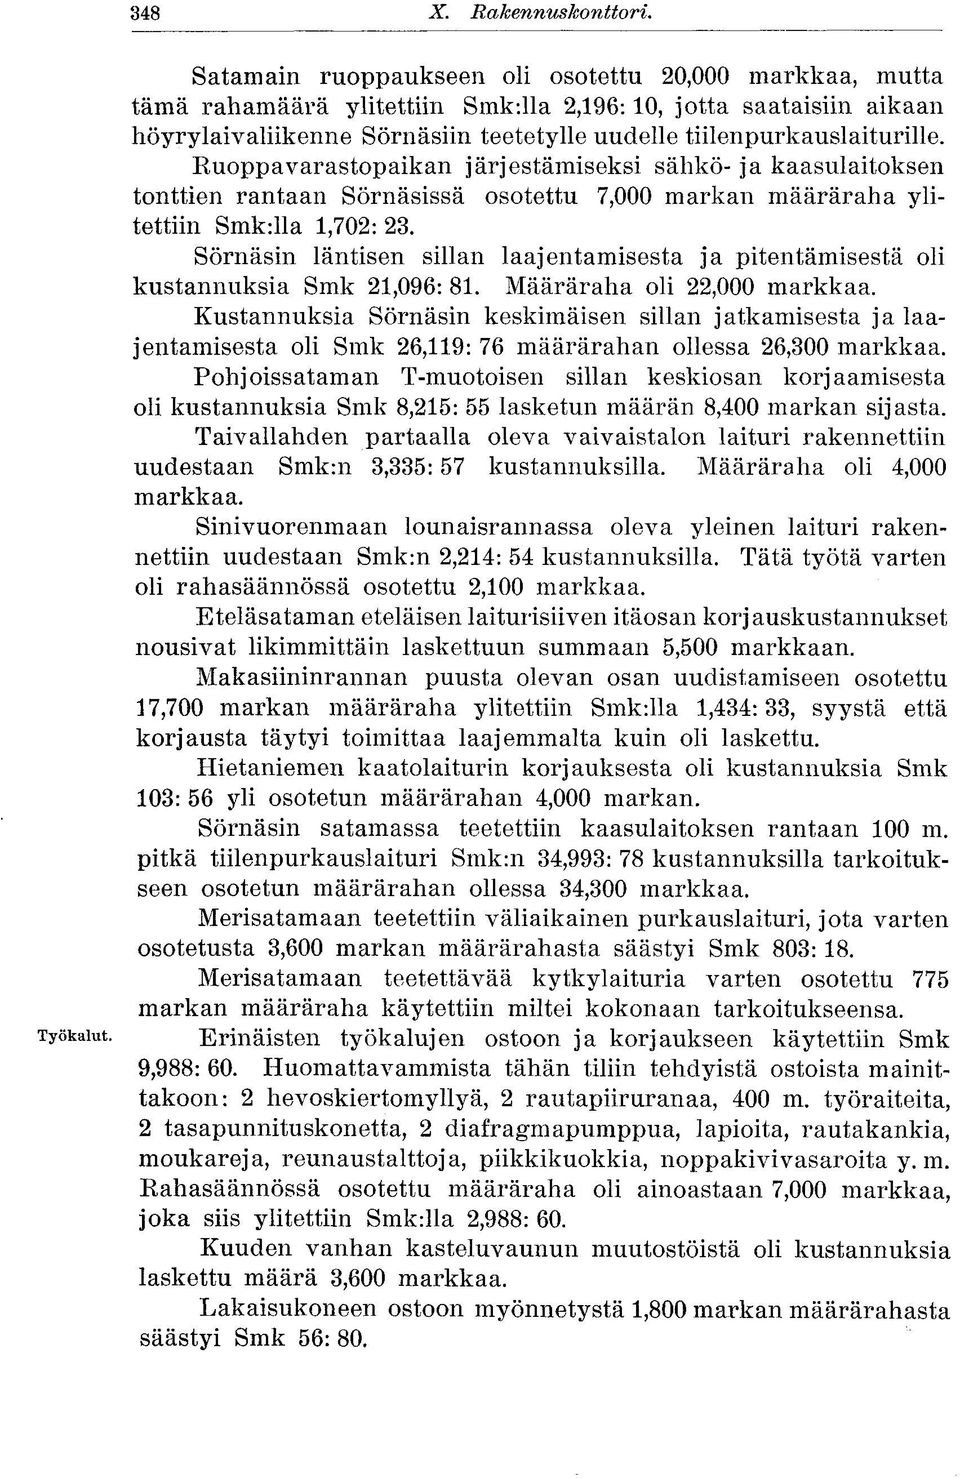 Ruoppa varastopaikan järjestämiseksi sähkö- ja kaasulaitoksen tonttien rantaan Sörnäsissä osotettu 7,000 markan määräraha ylitettiin Smk:lla 1,702: 23.